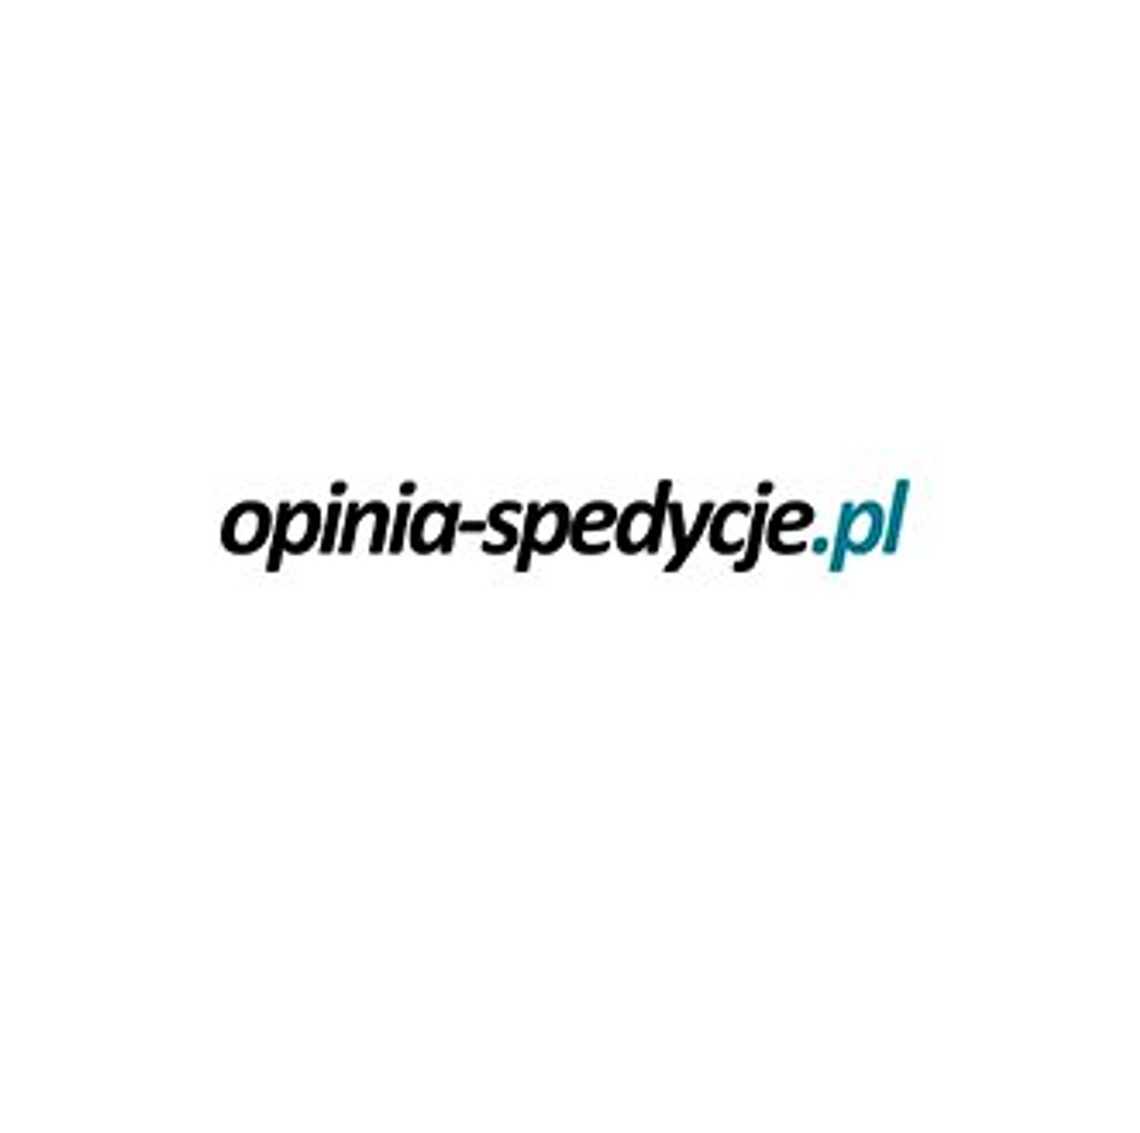 Opinia-spedycje.pl - opinie o firmach logistycznych